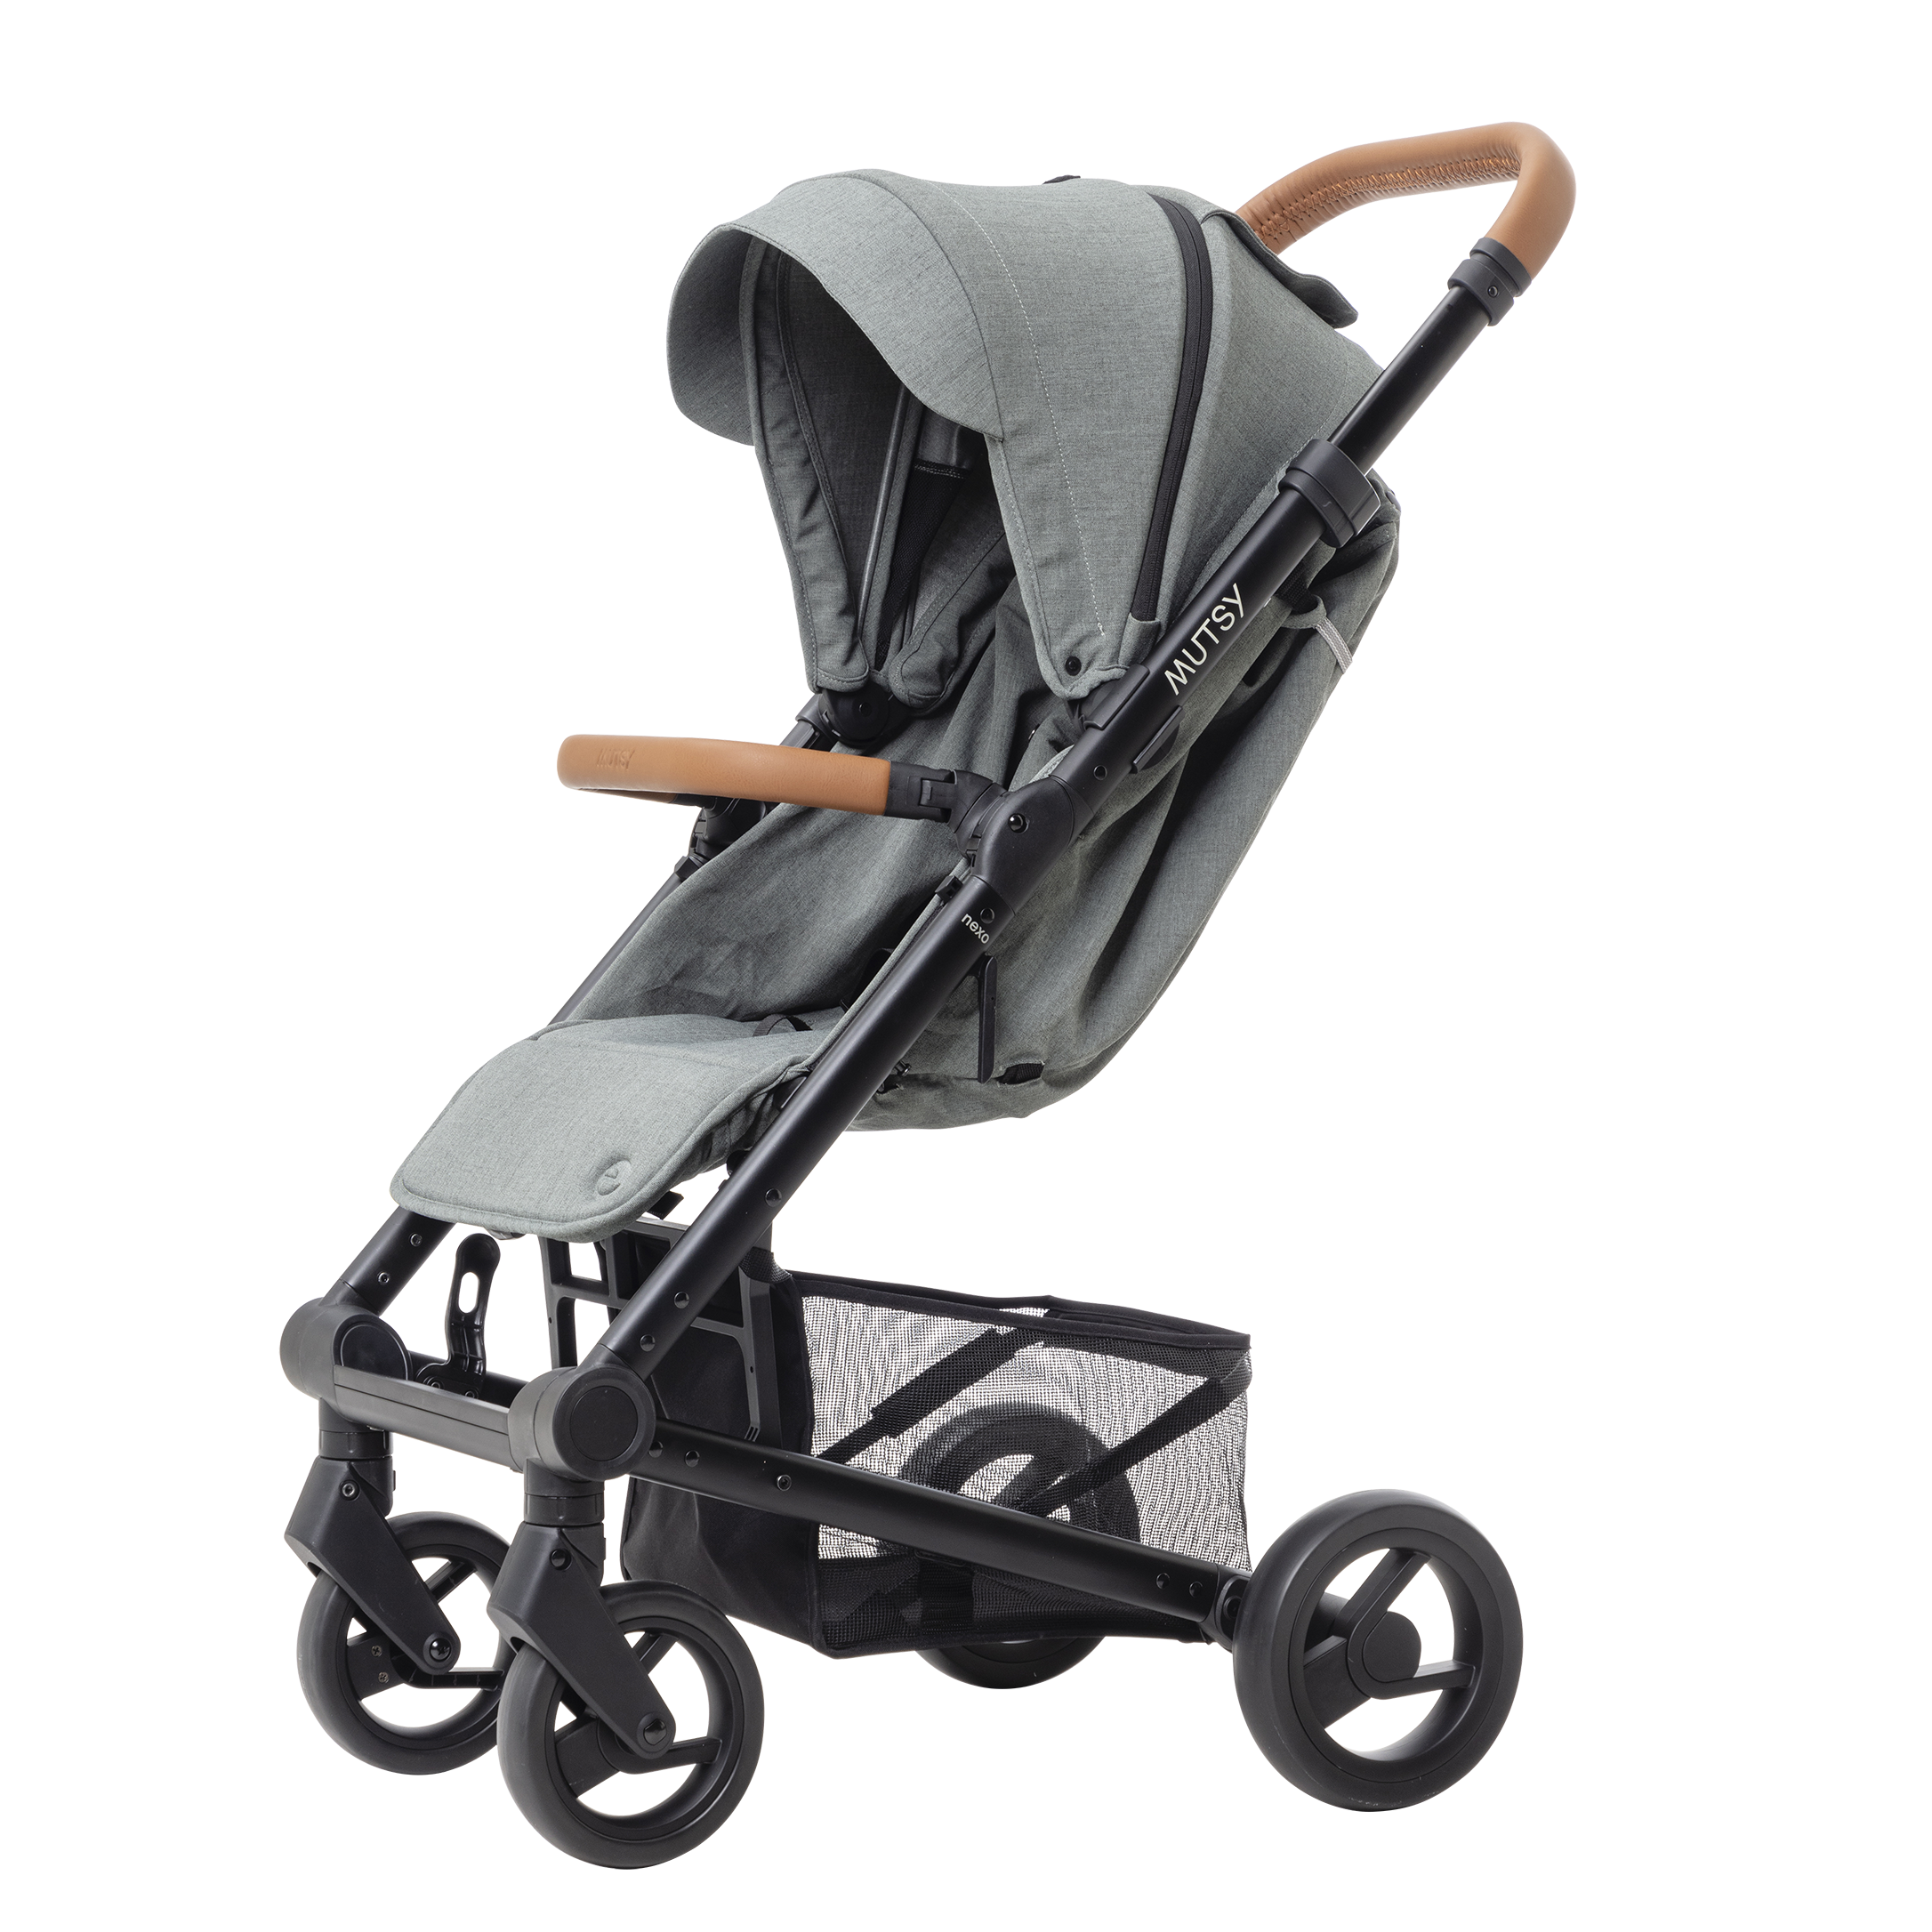 Прогулочная коляска Mutsy Nexo Moss grey, для новорожденных и детей до 22 кг прогулочная коляска mutsy nexo moss grey для новорожденных и детей до 22 кг